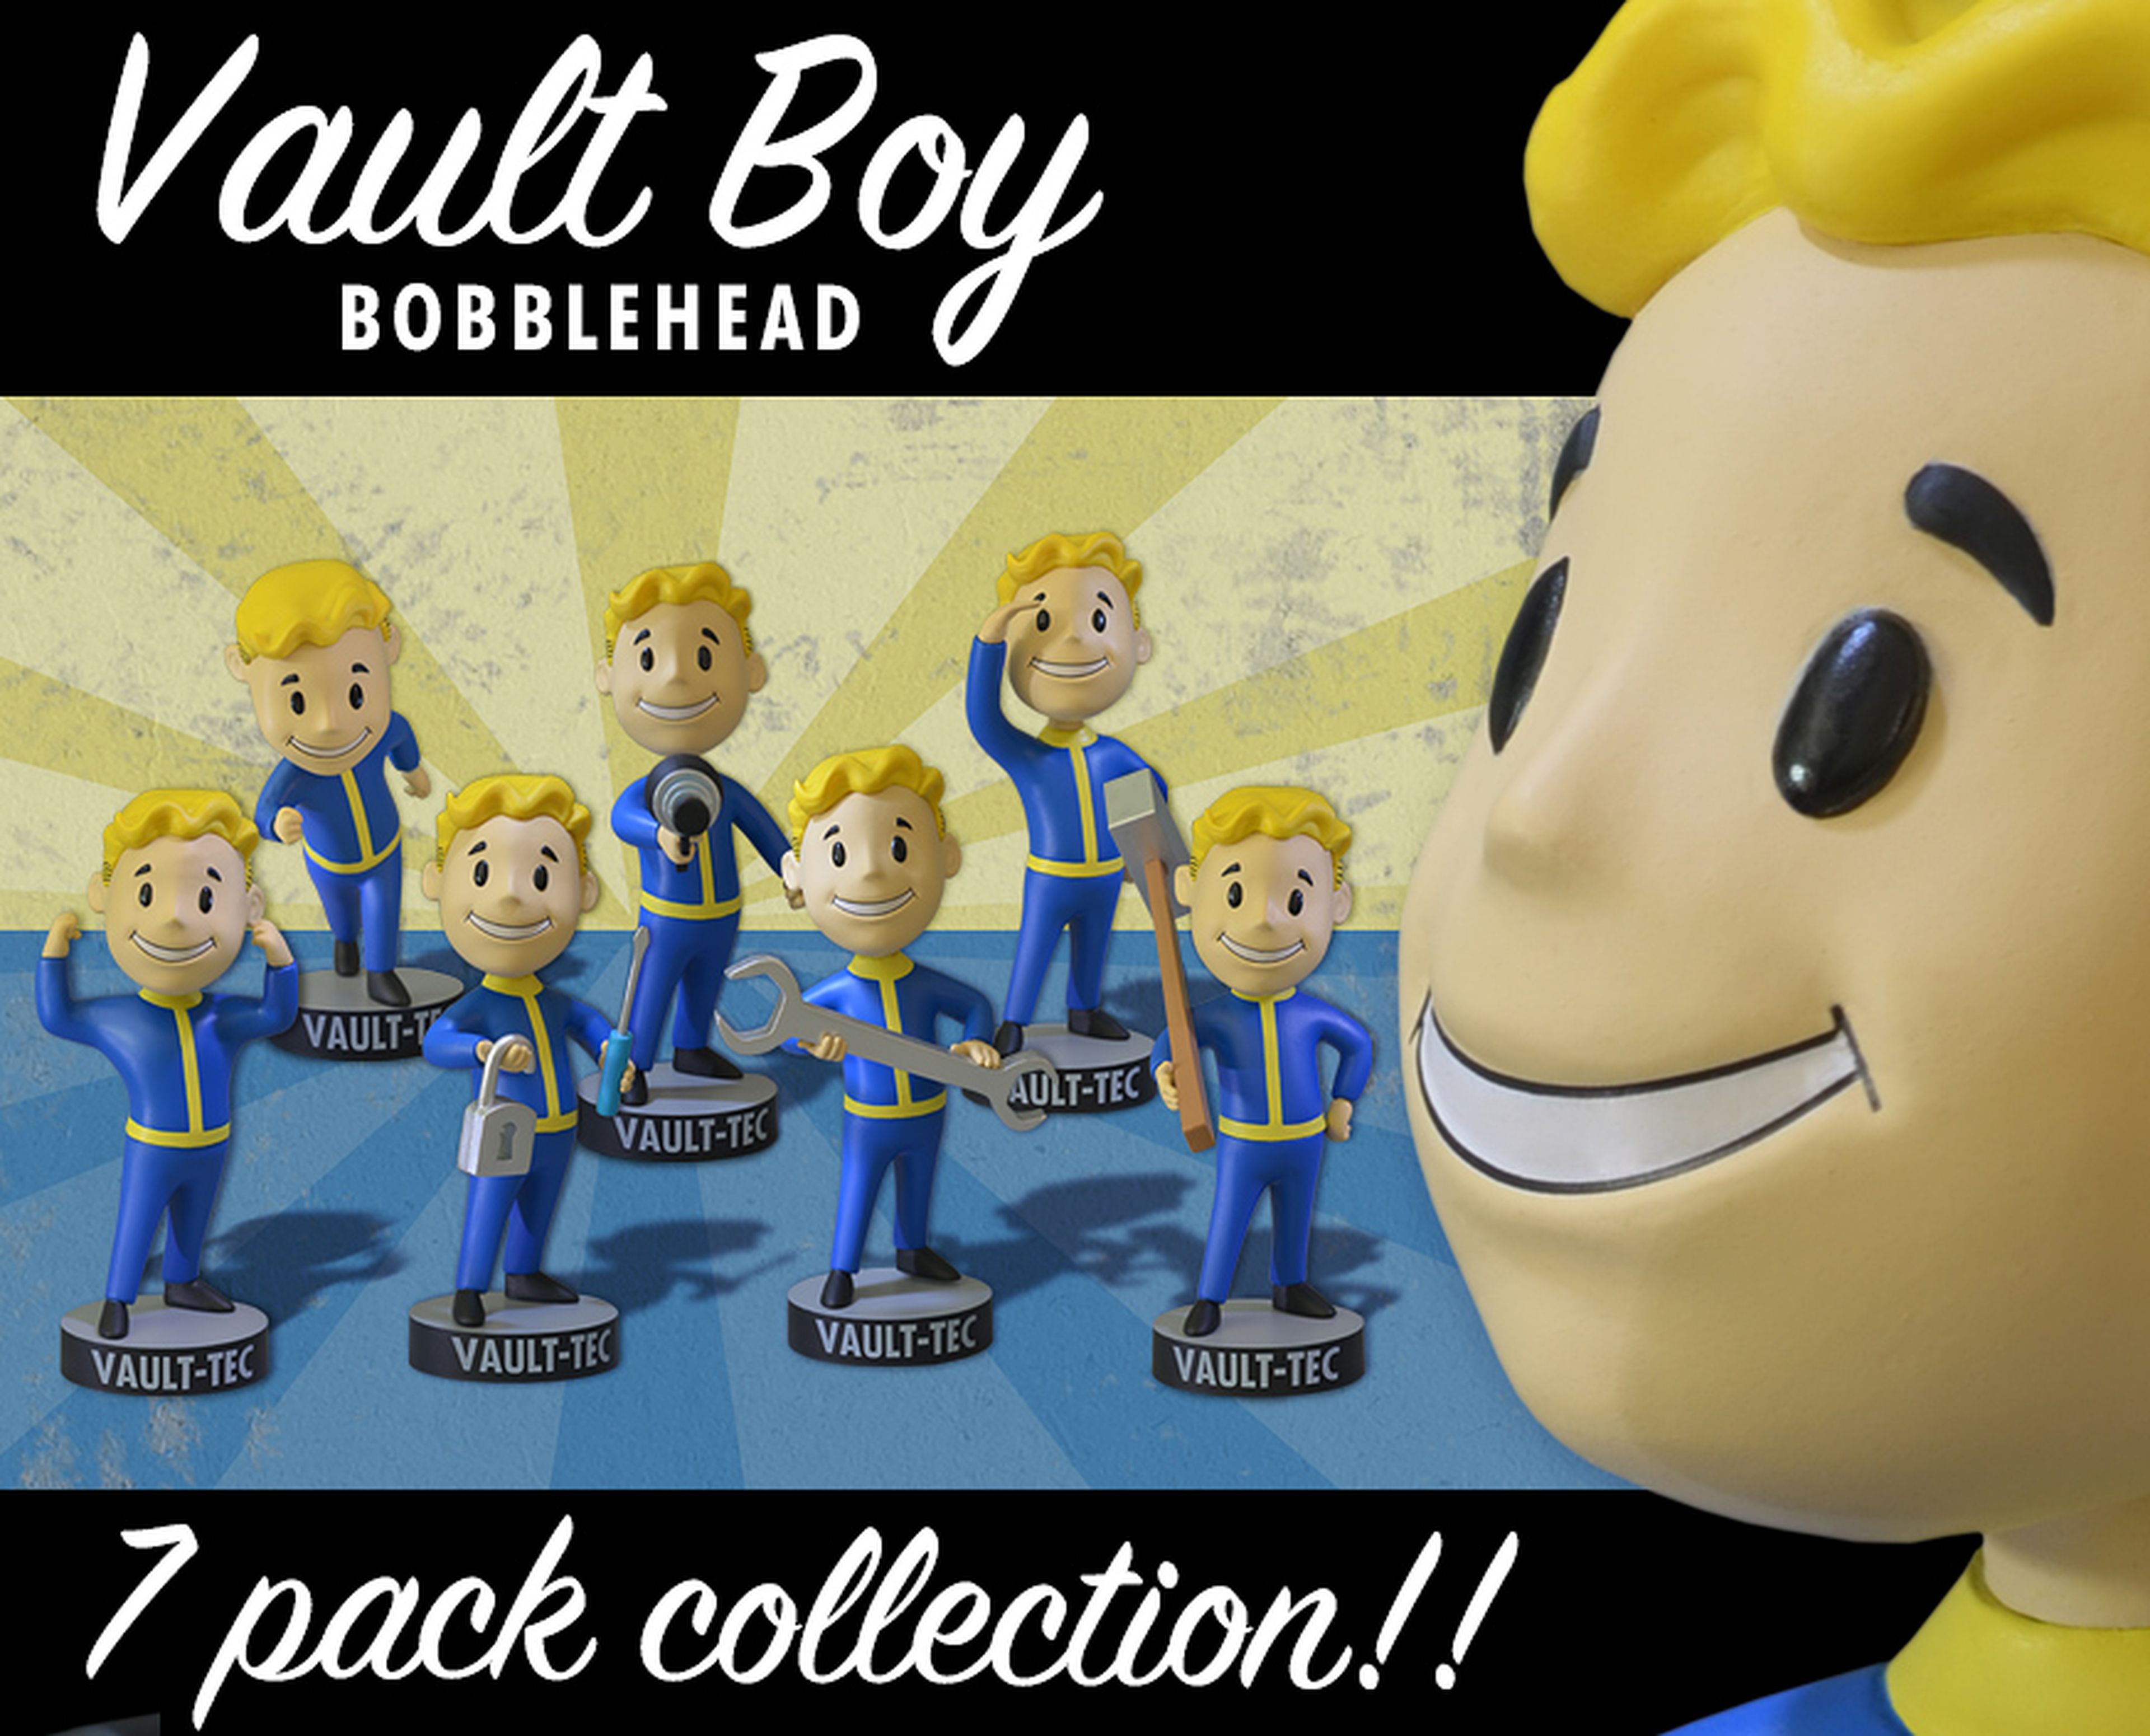 Vaultboys de Fallout 3, de Gaming Heads